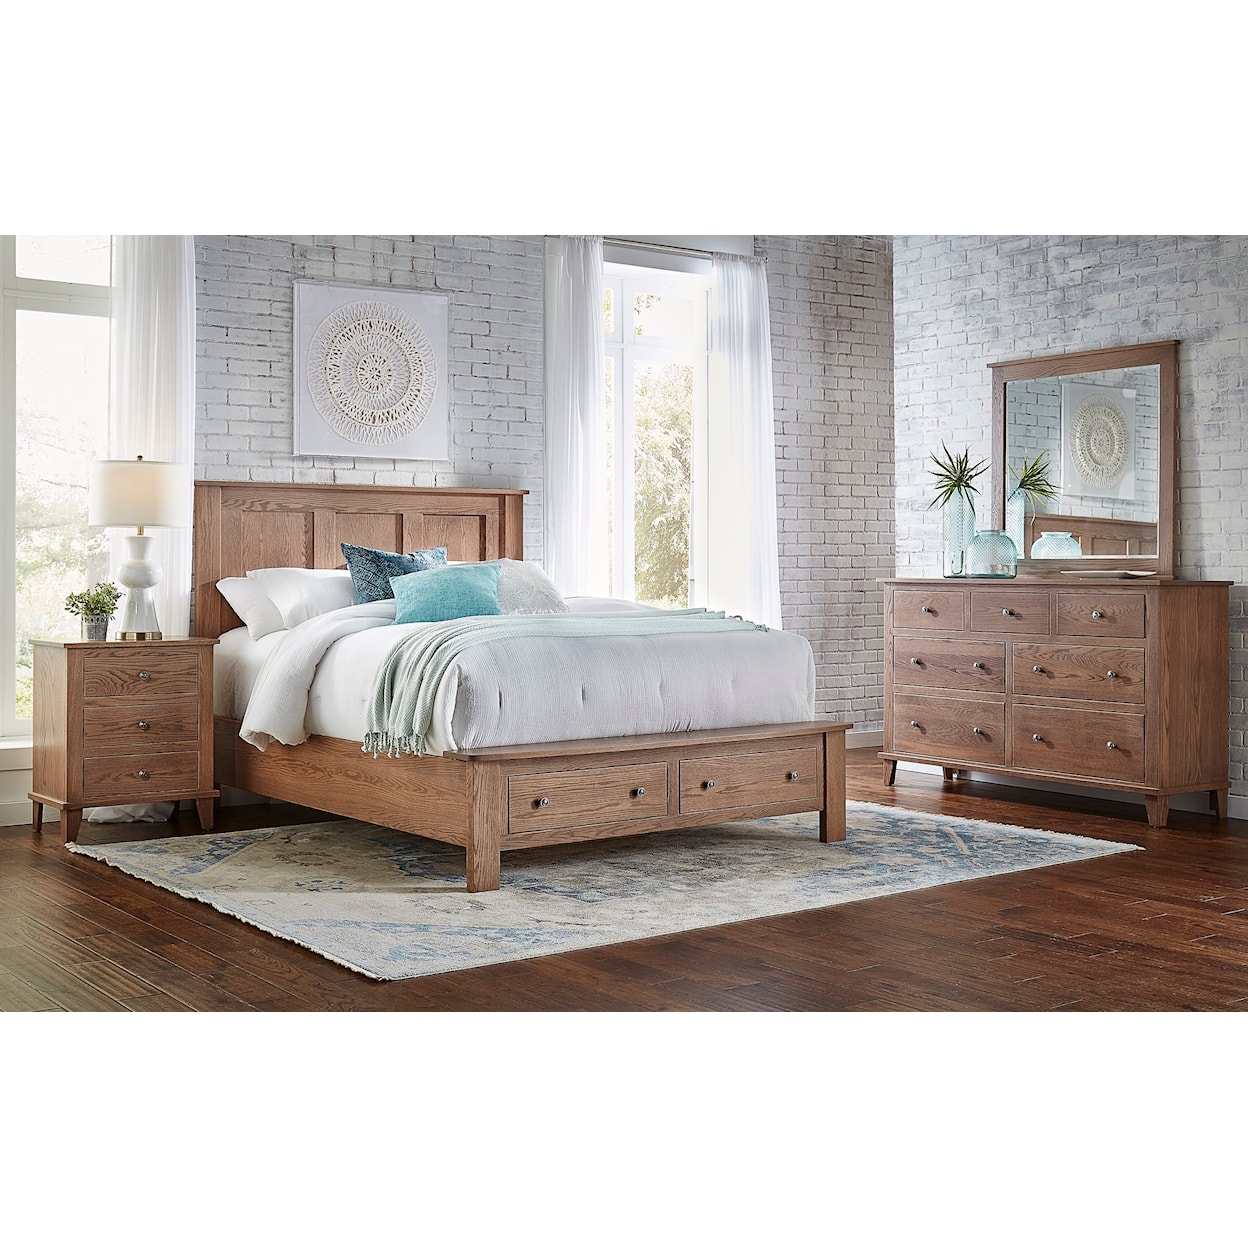 Archbold Furniture Franklin Queen Storage Bed